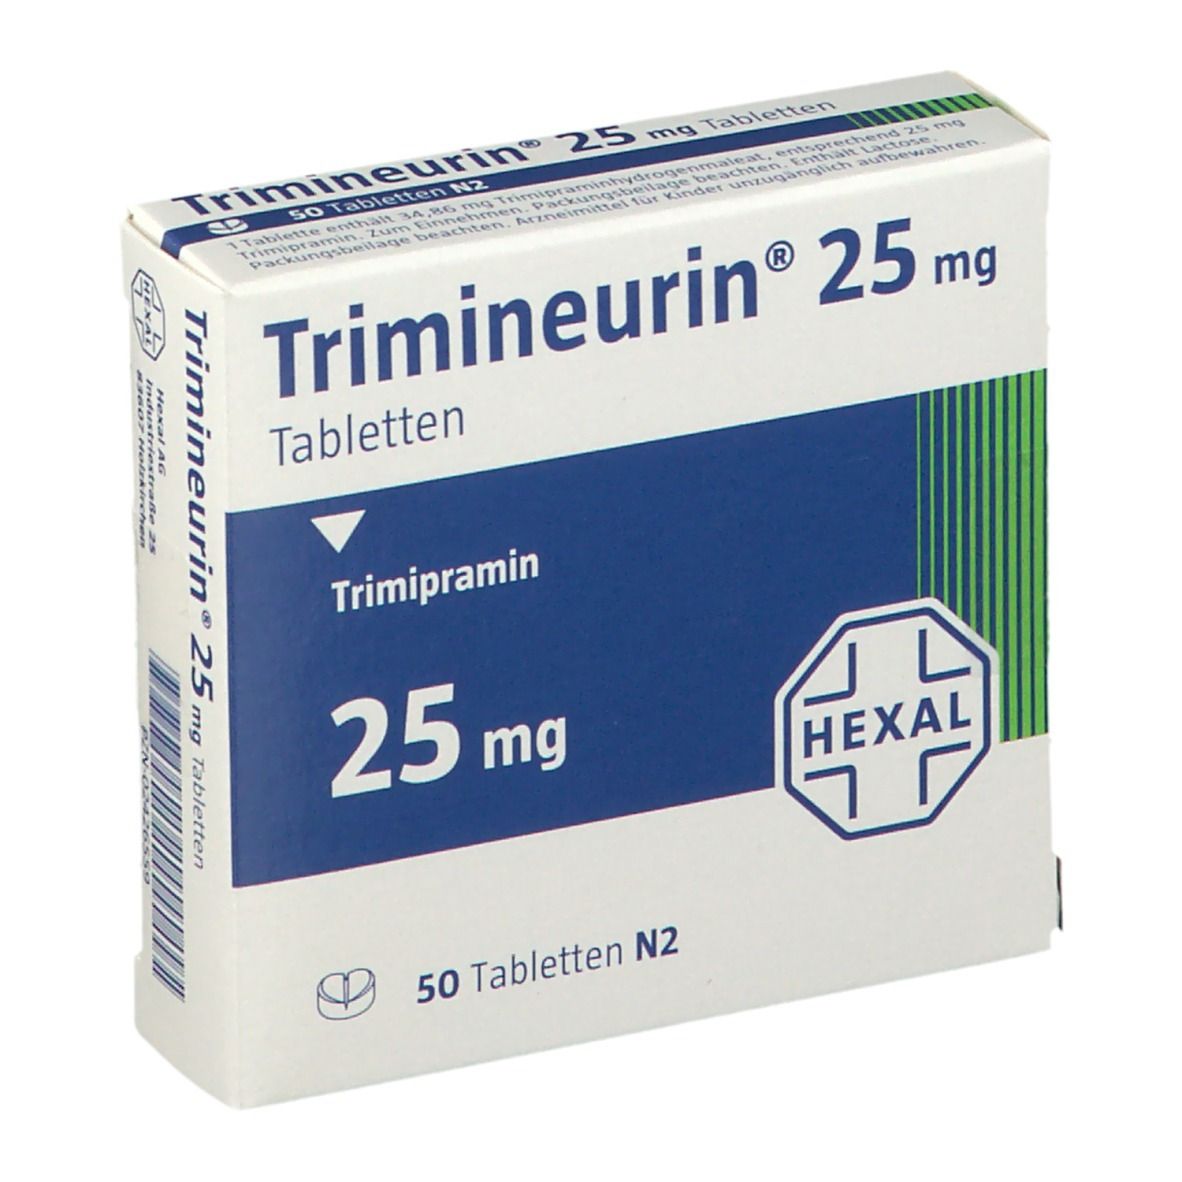 Trimineurin® 25 mg